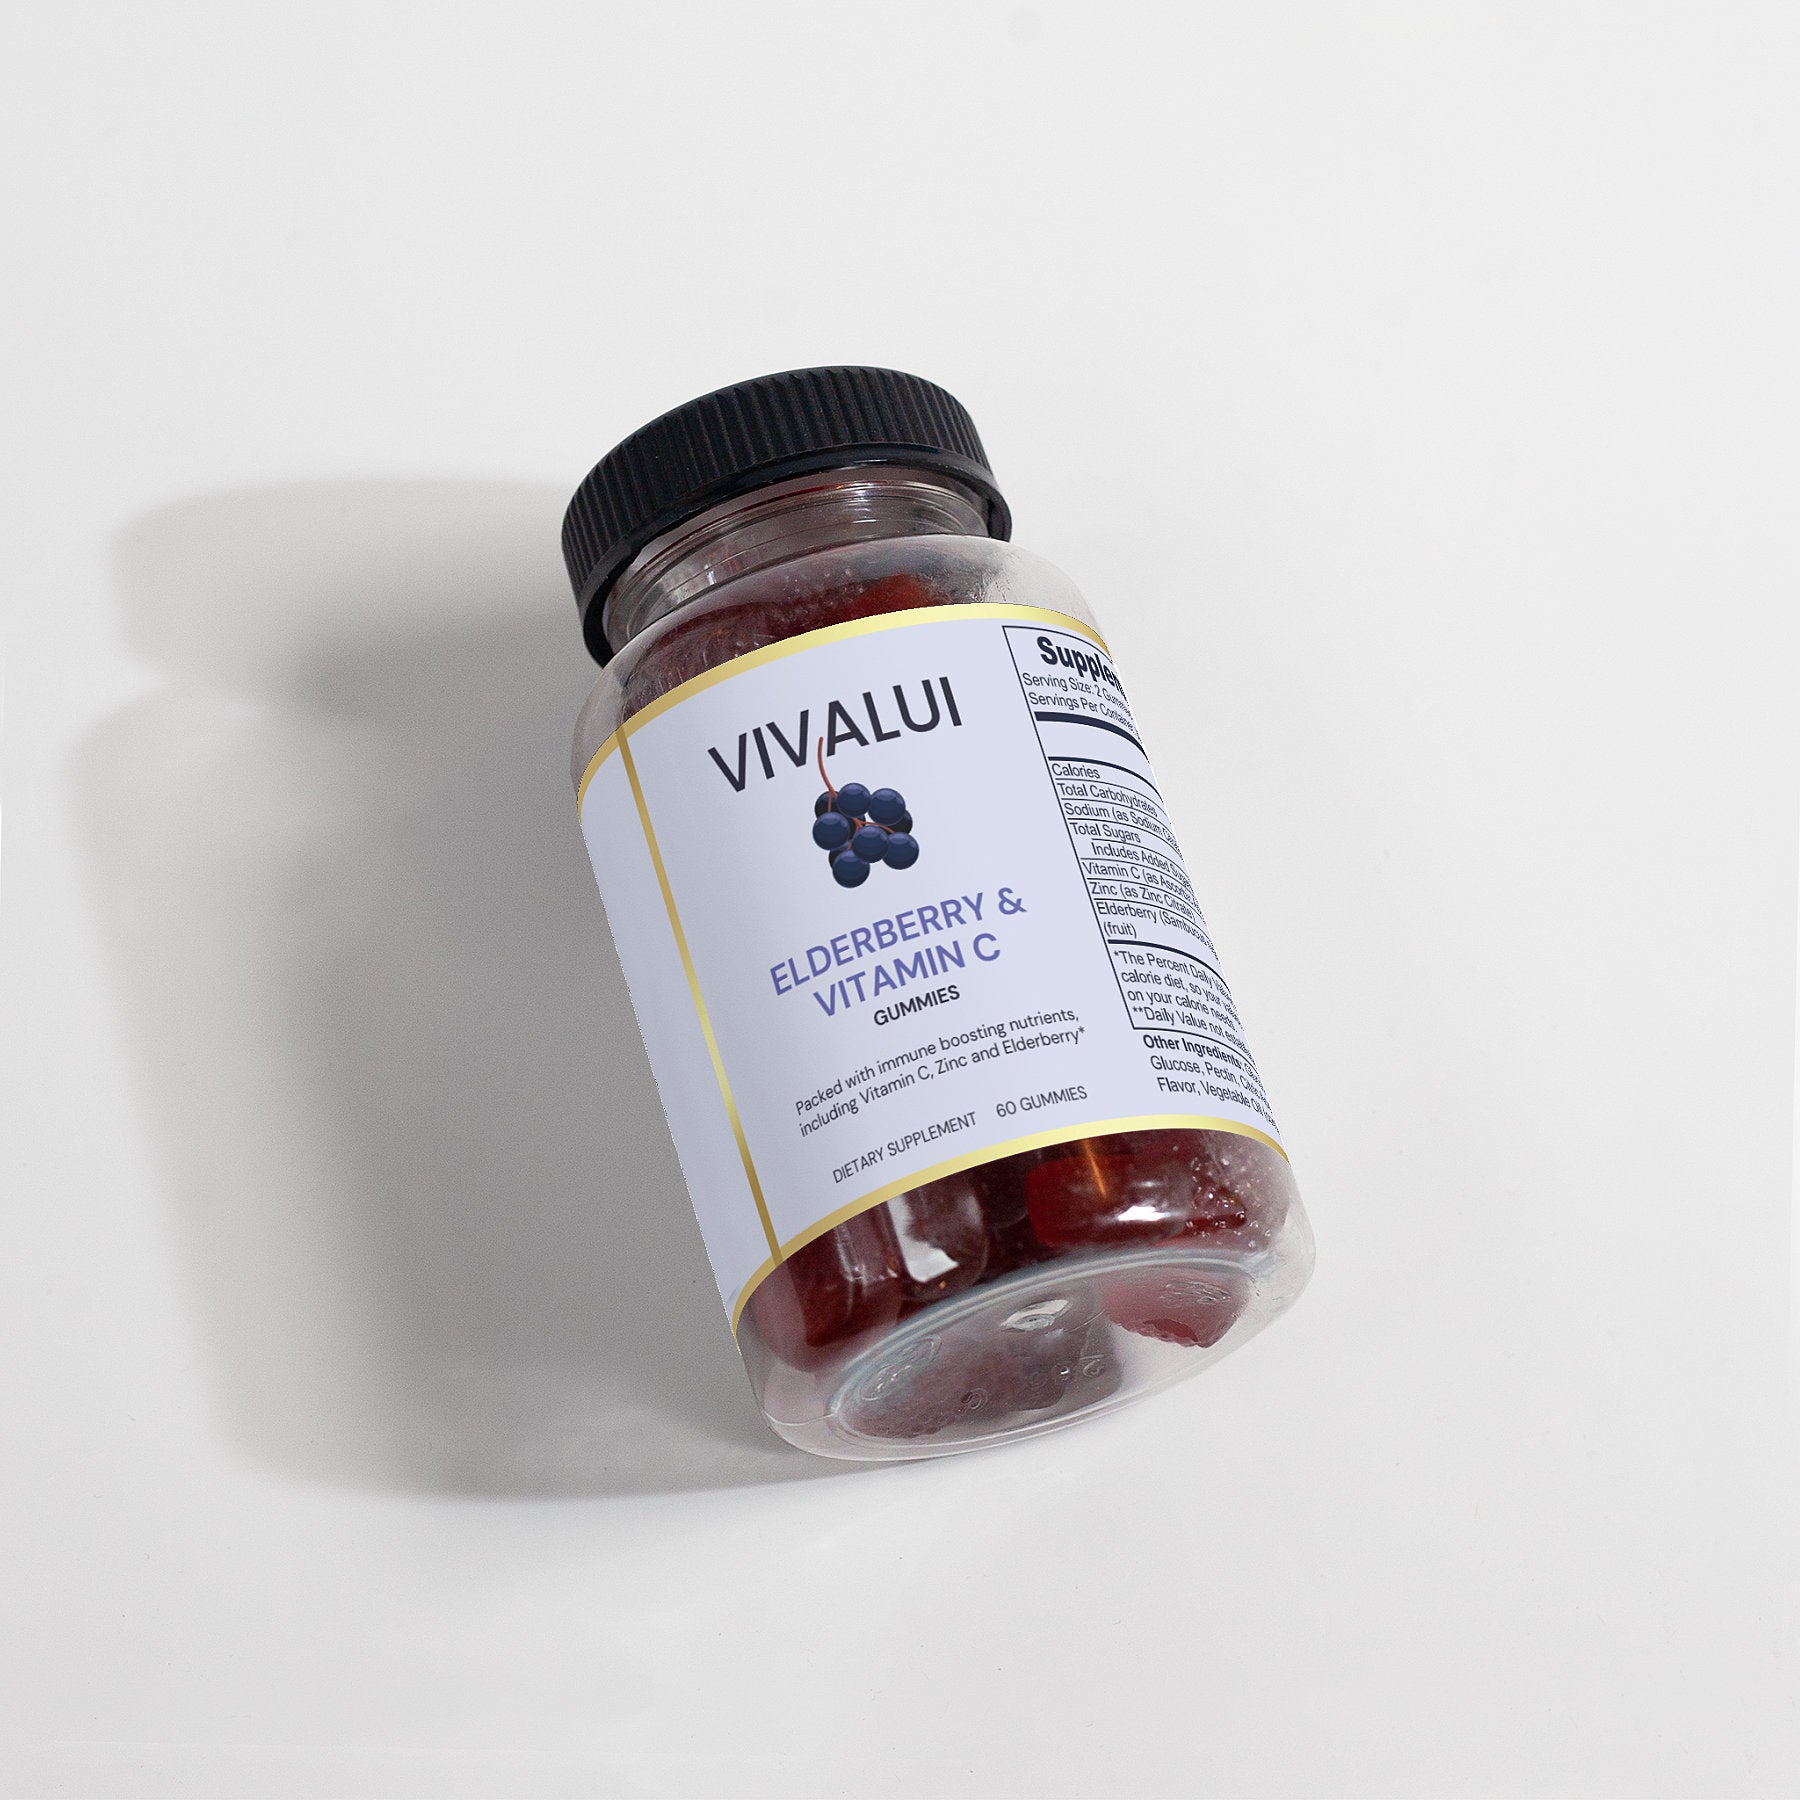 Vivalui Vegan Elderberry & Vitamin C Antioxidant Immune Boost Gummies